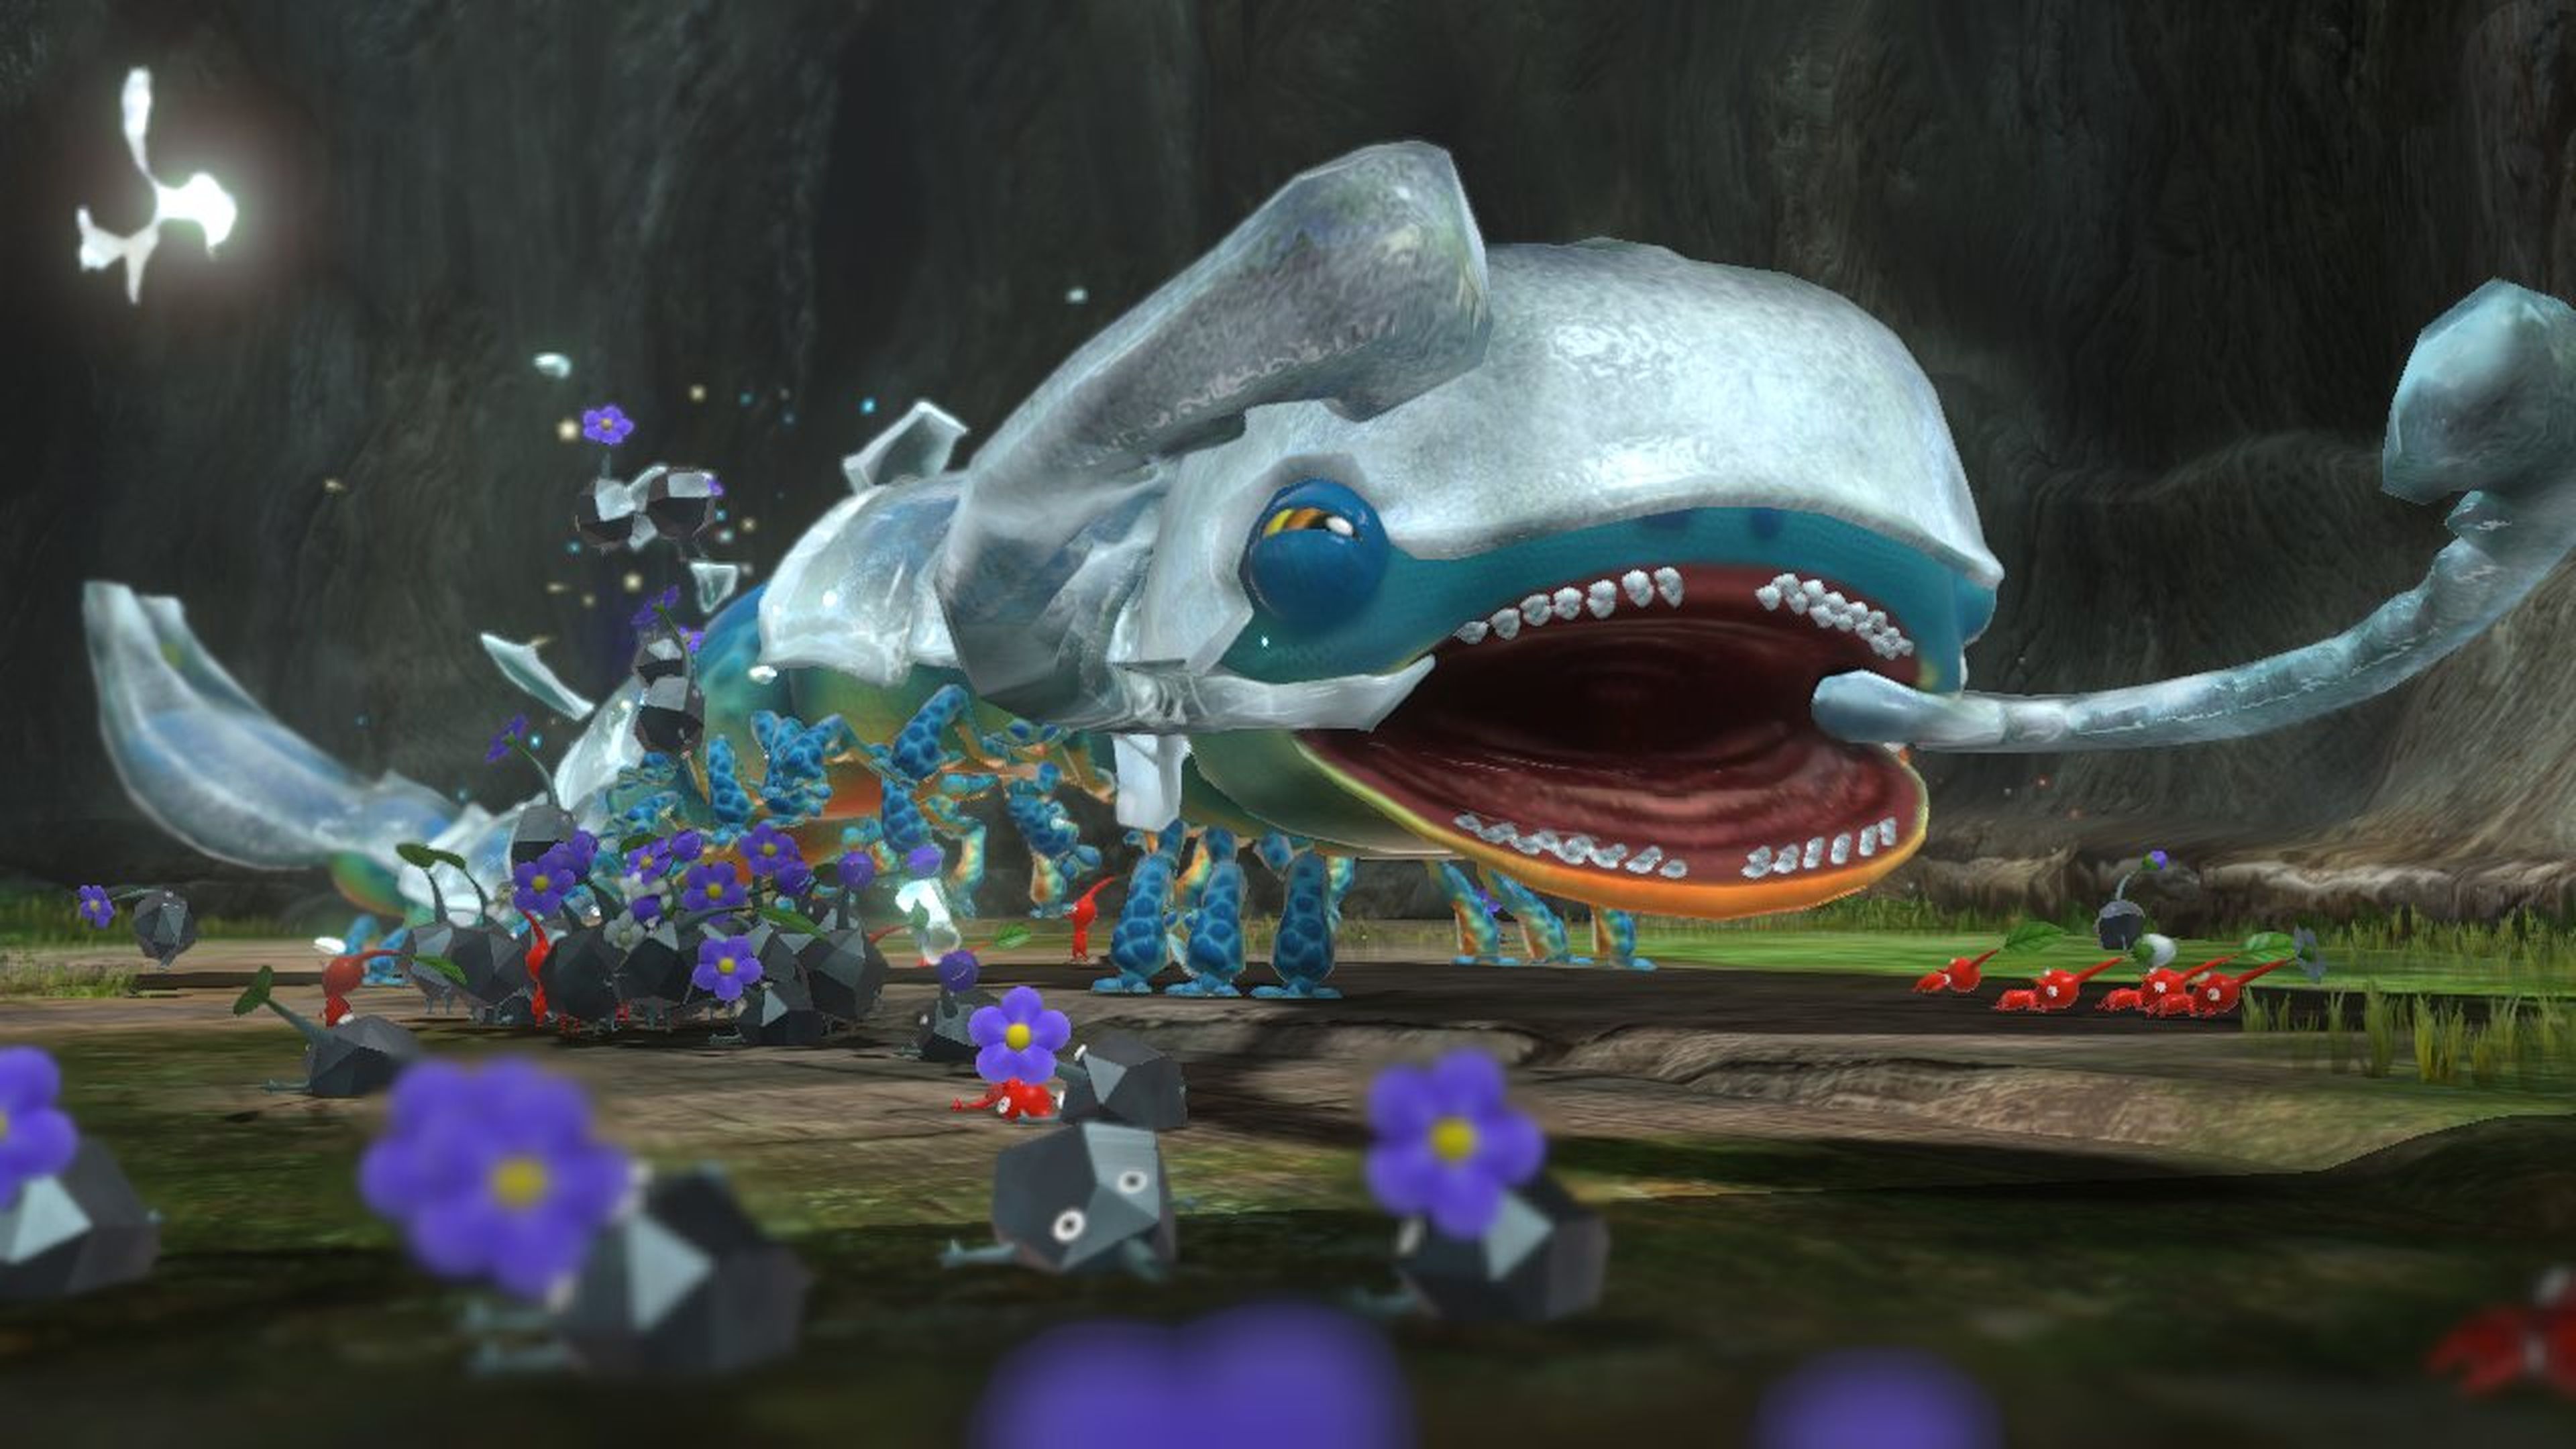 Los 20 mejores juegos de Wii U